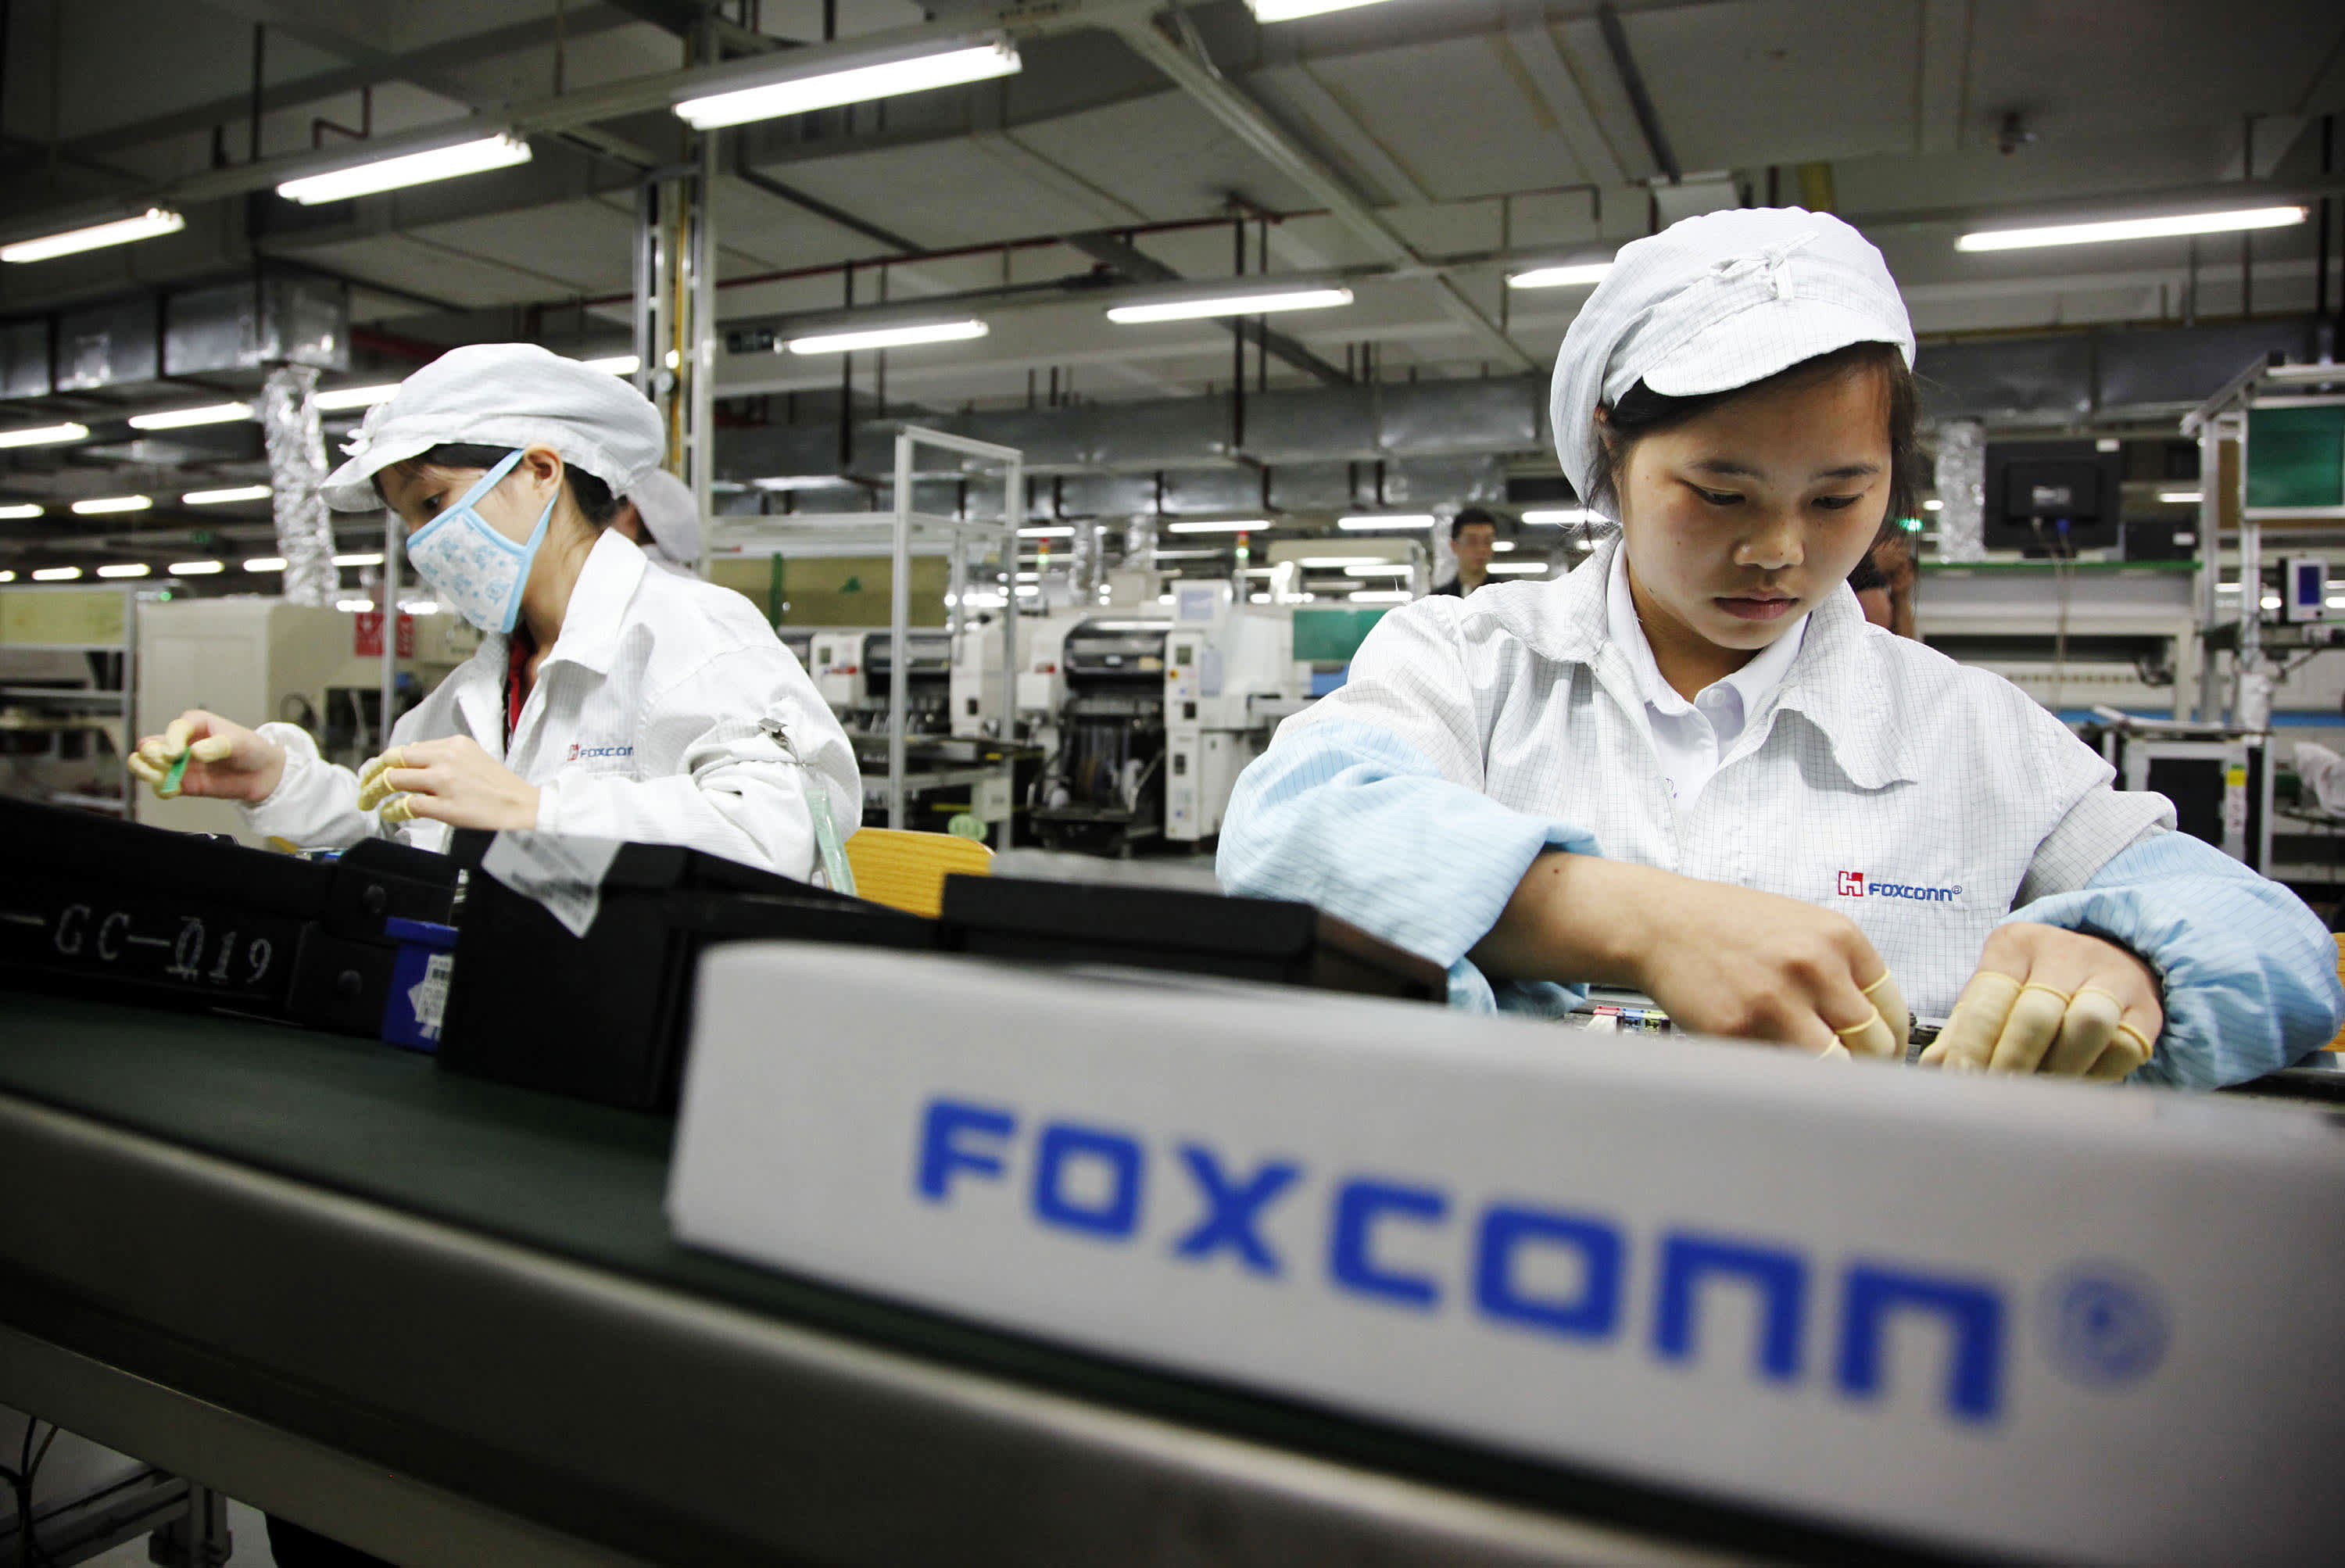 Tysiące pracowników zwolnionych z głównej fabryki Foxconn, dostawy iPhone'ów zagrożone